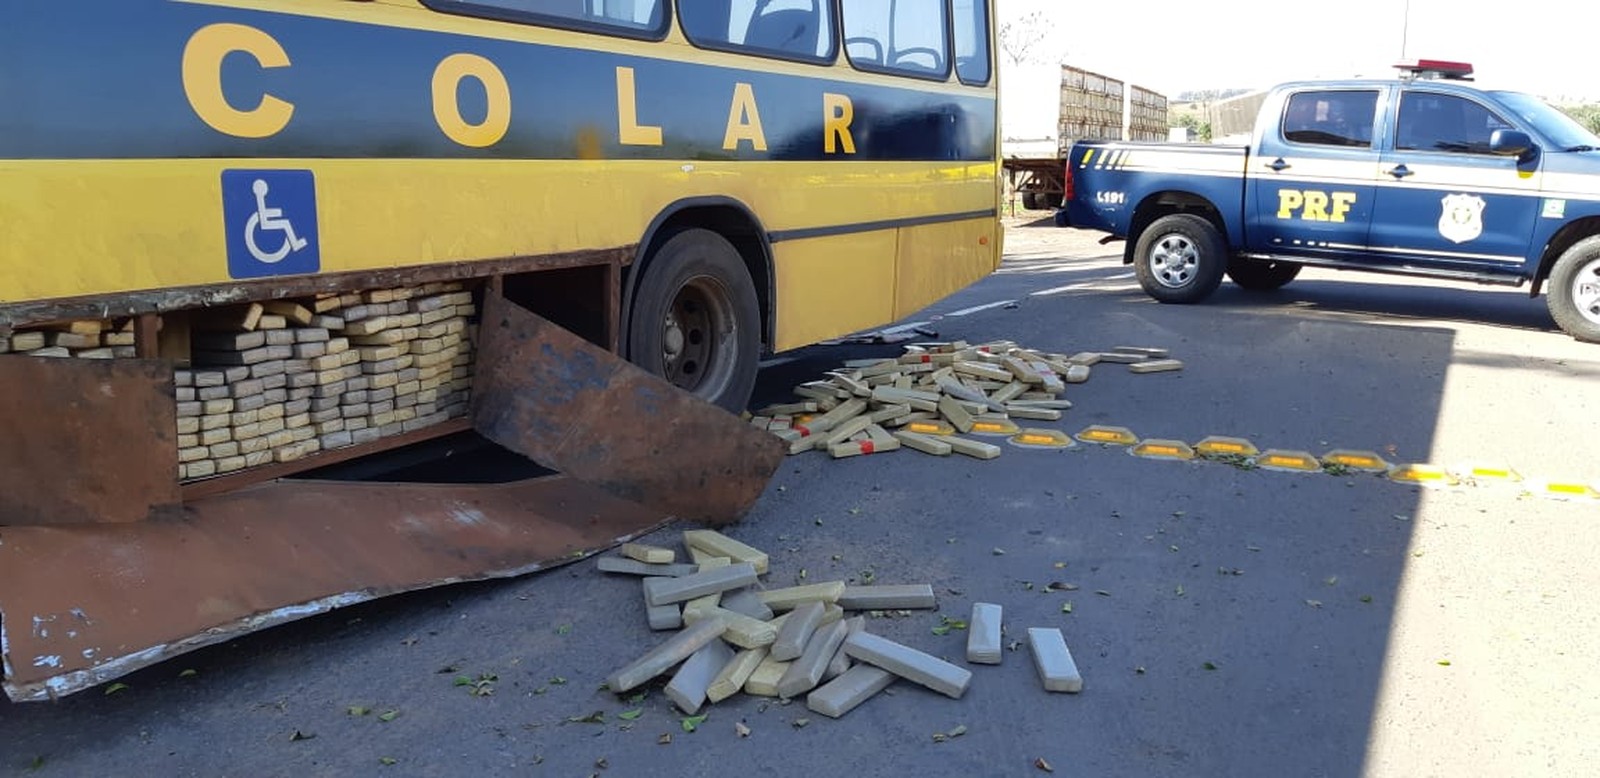 Imagem Motorista é preso com quase 1 tonelada de maconha em ônibus escolar falso, diz PRF